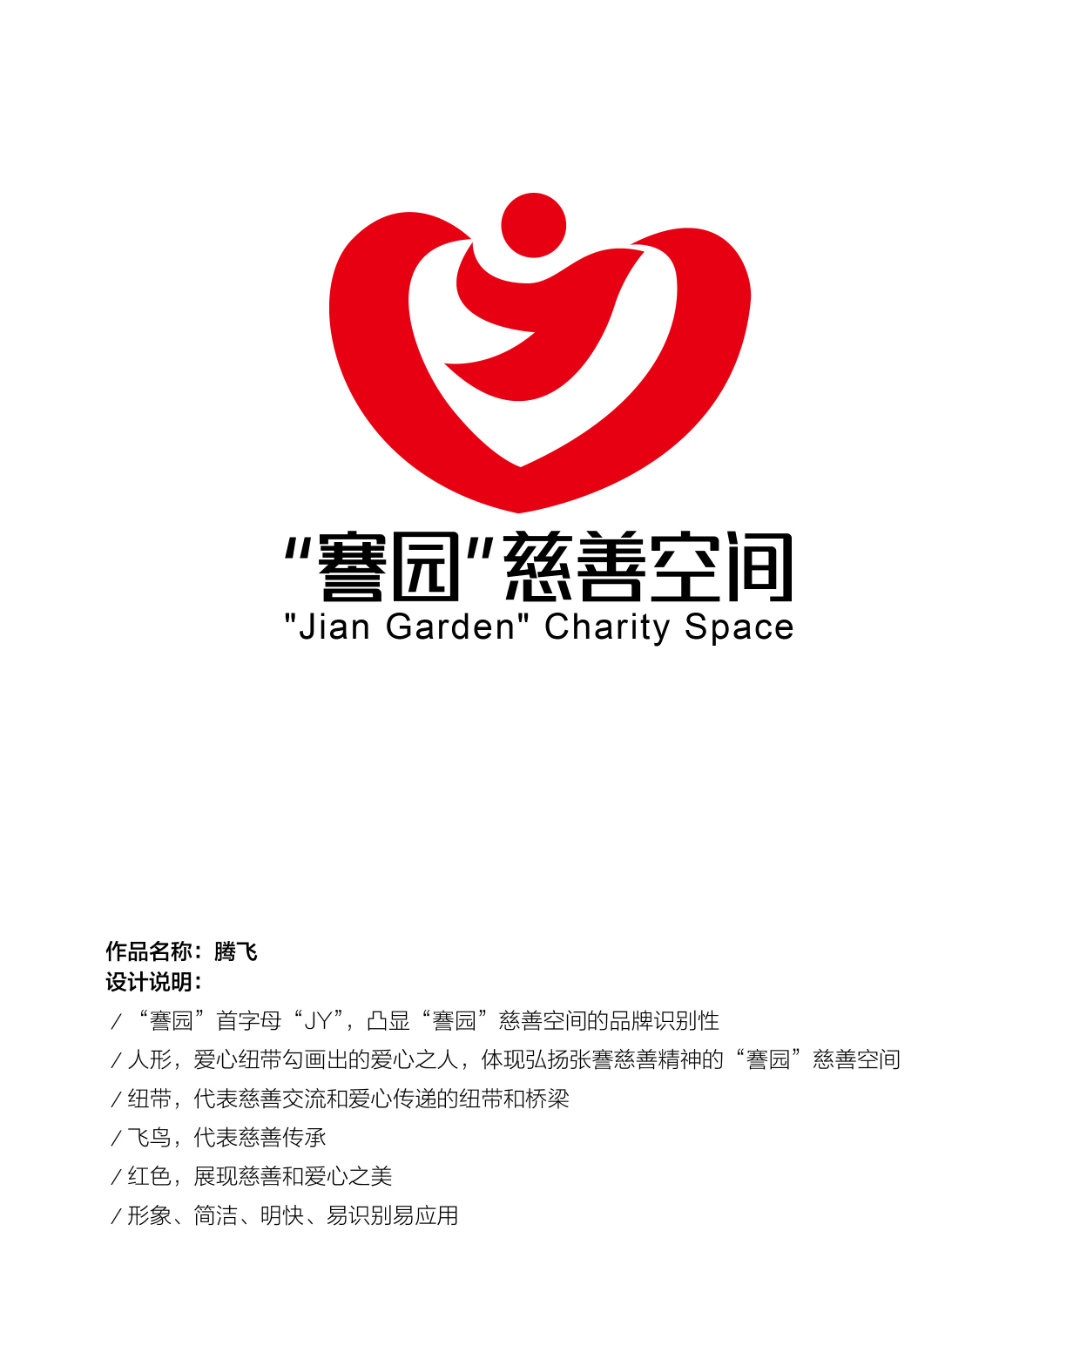 謇园慈善空间logo征集活动评选结果公示